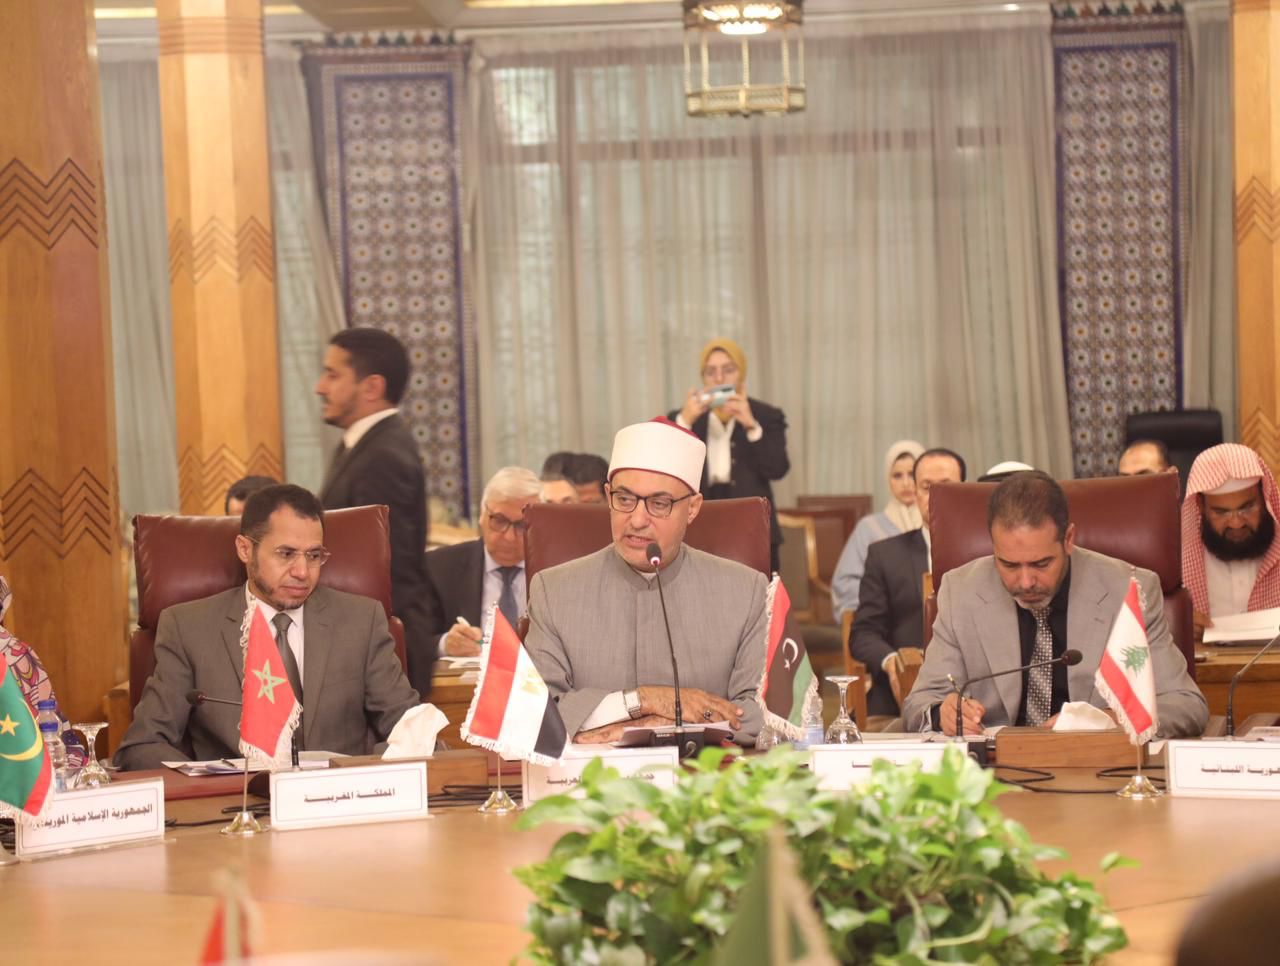 مؤتمر التسامح والسلام والتنمية المستدامة في الوطن العربي